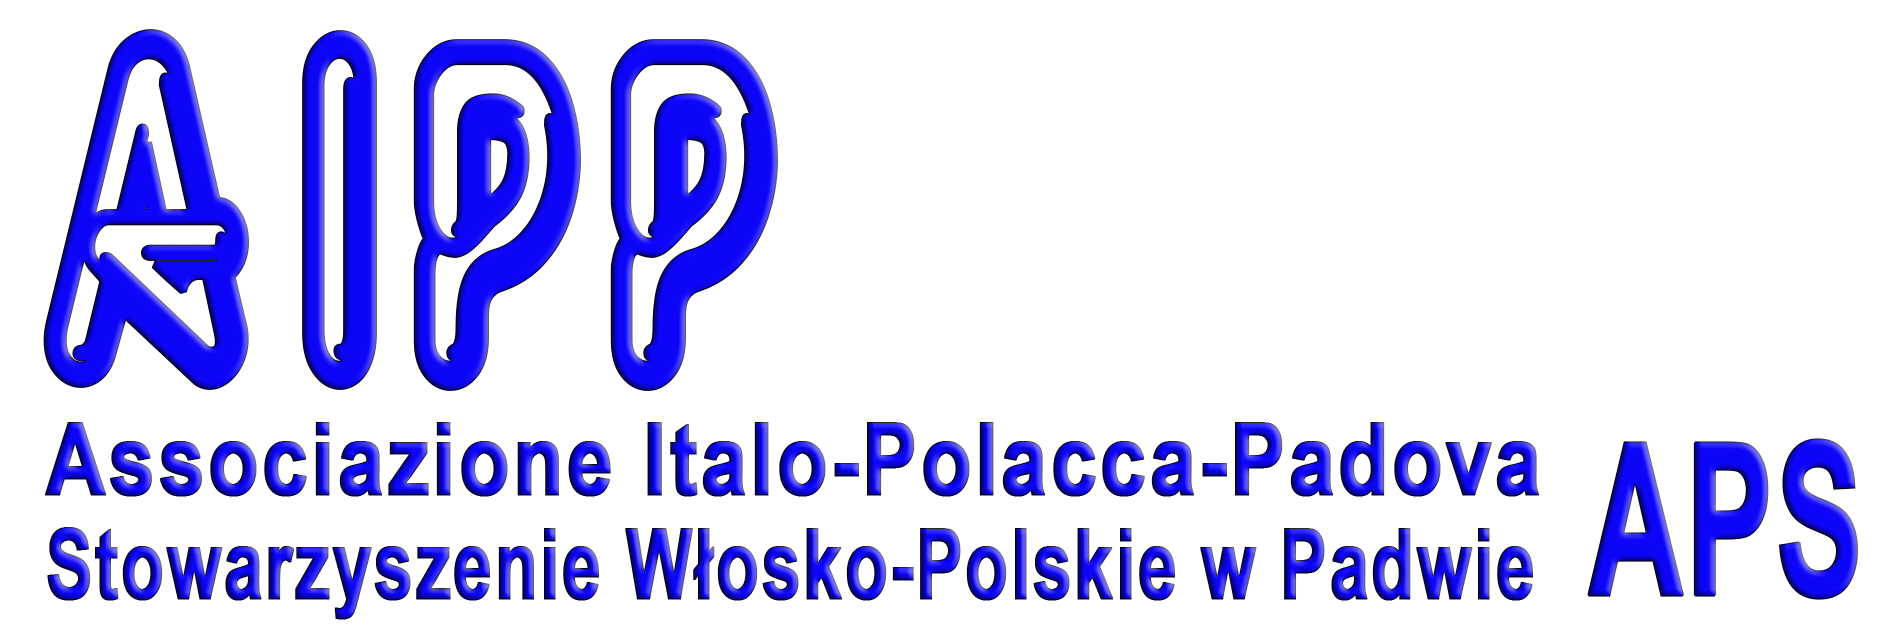 Associazione Italo-Polacca-Padova